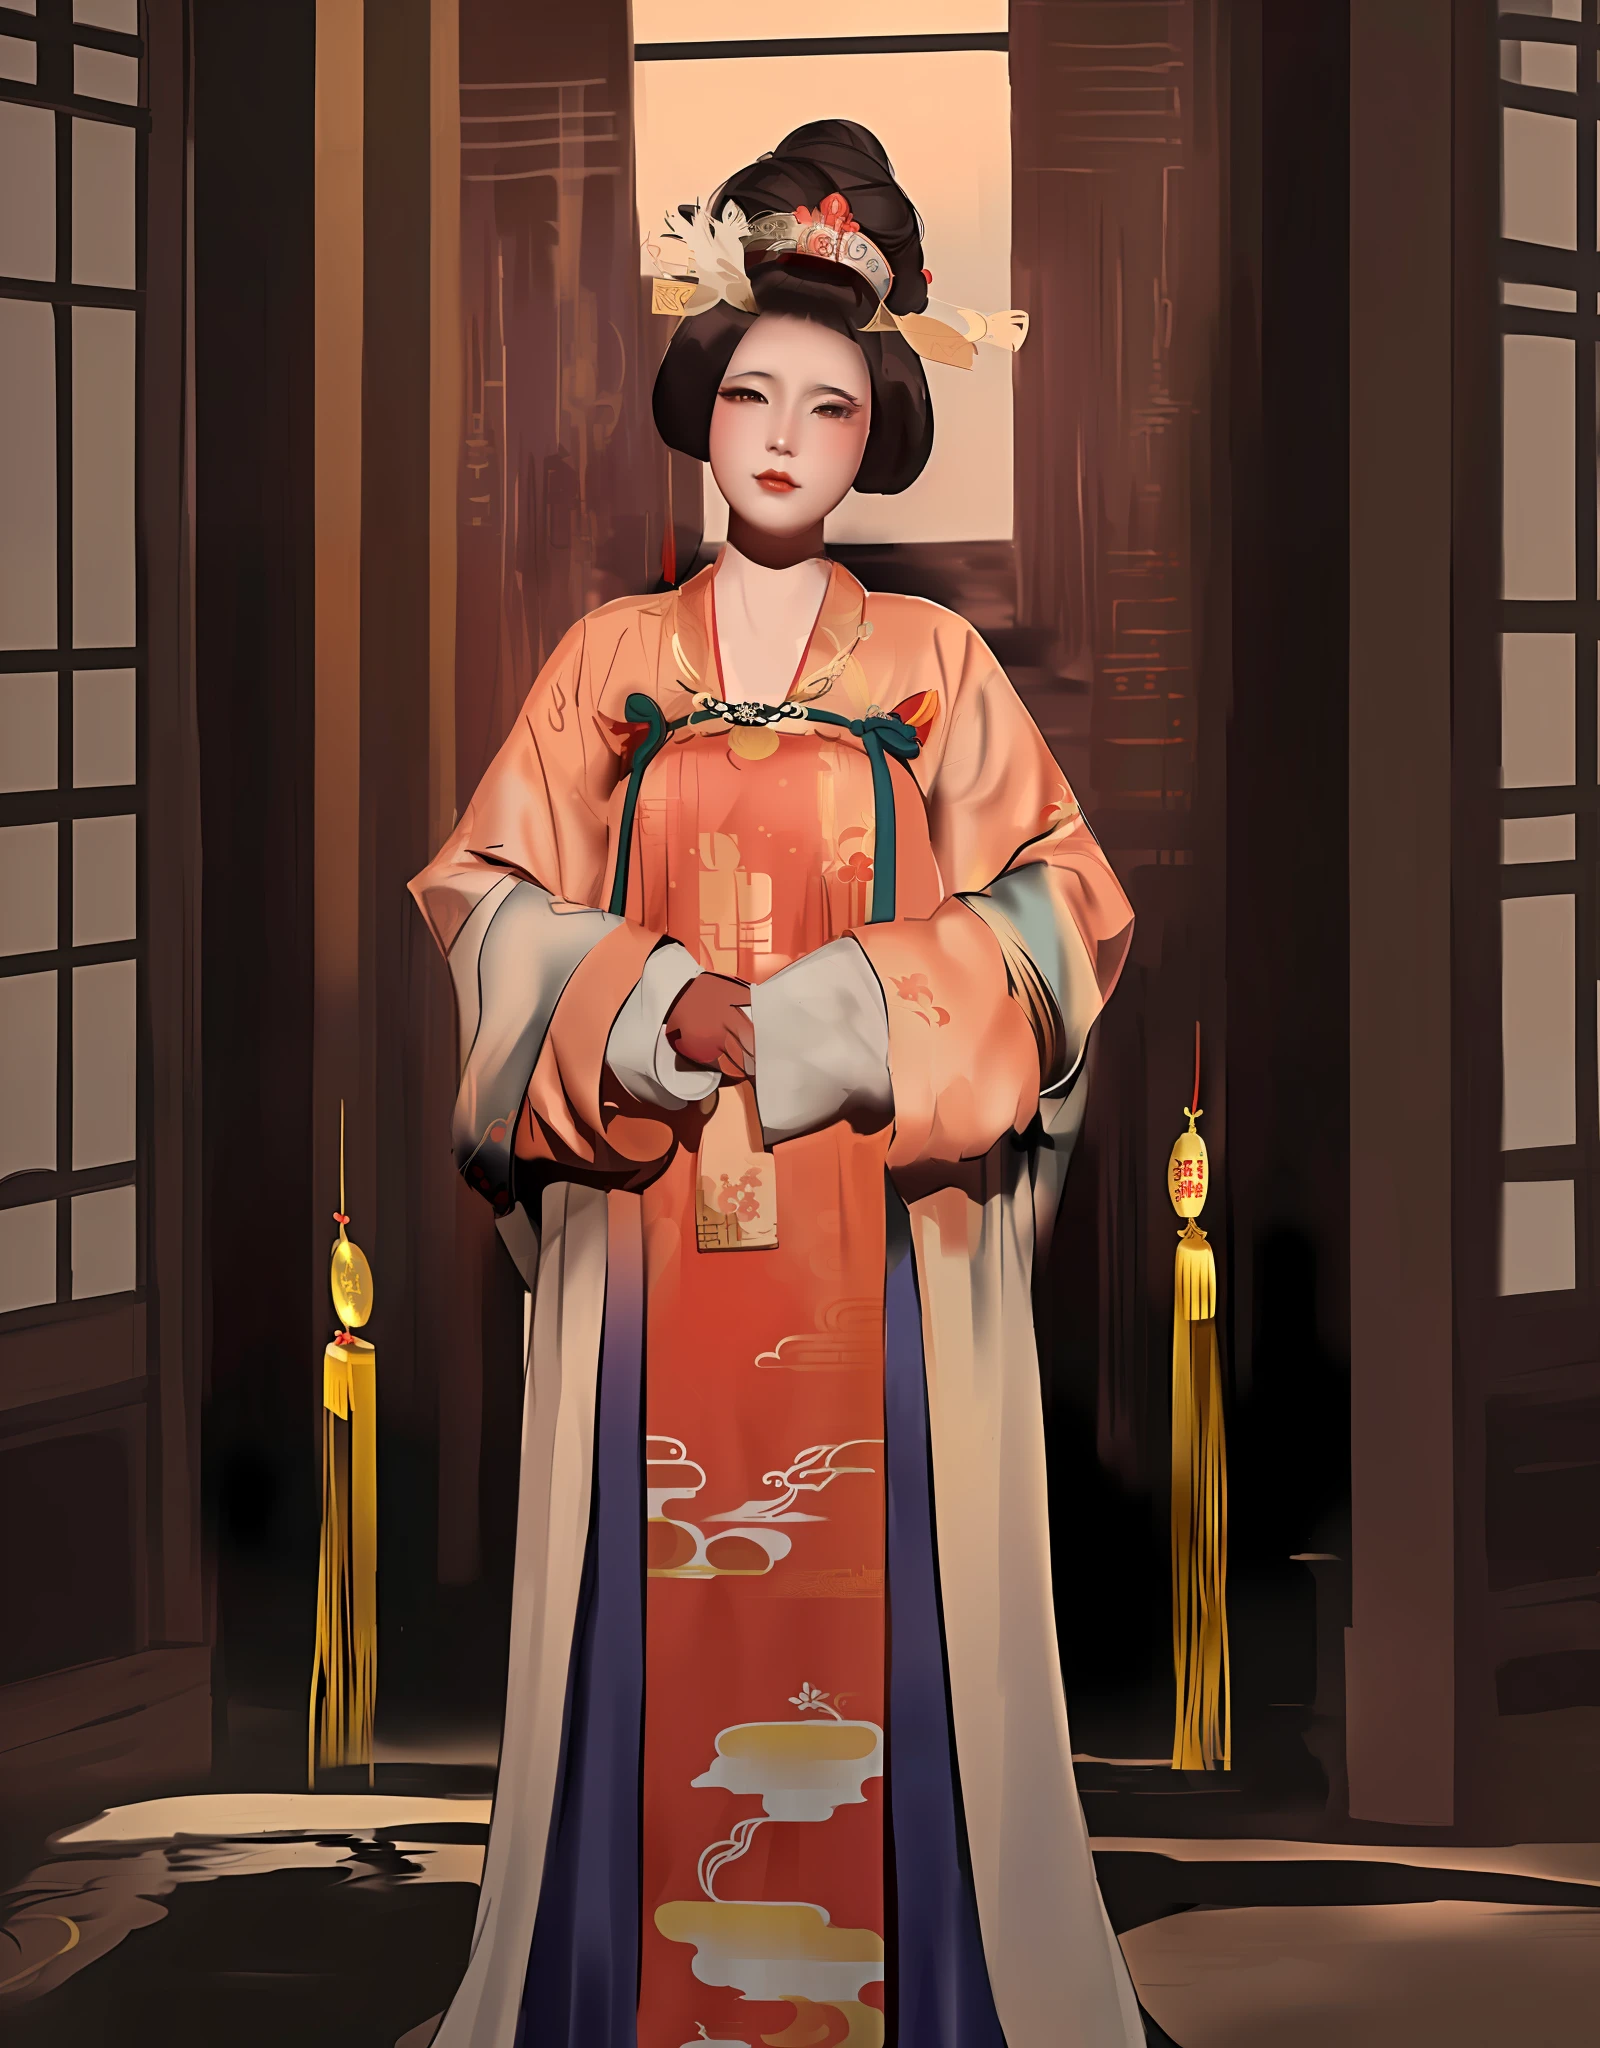 mulher arafa com vestido quimono e chapéu posando para uma foto, inspired by Uemura Shōen, Palácio ， uma garota em hanfu, obras de arte no estilo de guweiz, chinese empress, inspirado em Wang Meng, inspirado em Min Zhen, inspirado em Yun Du-seo, inspirado em Yun Shouping, inspirado em Lan Ying